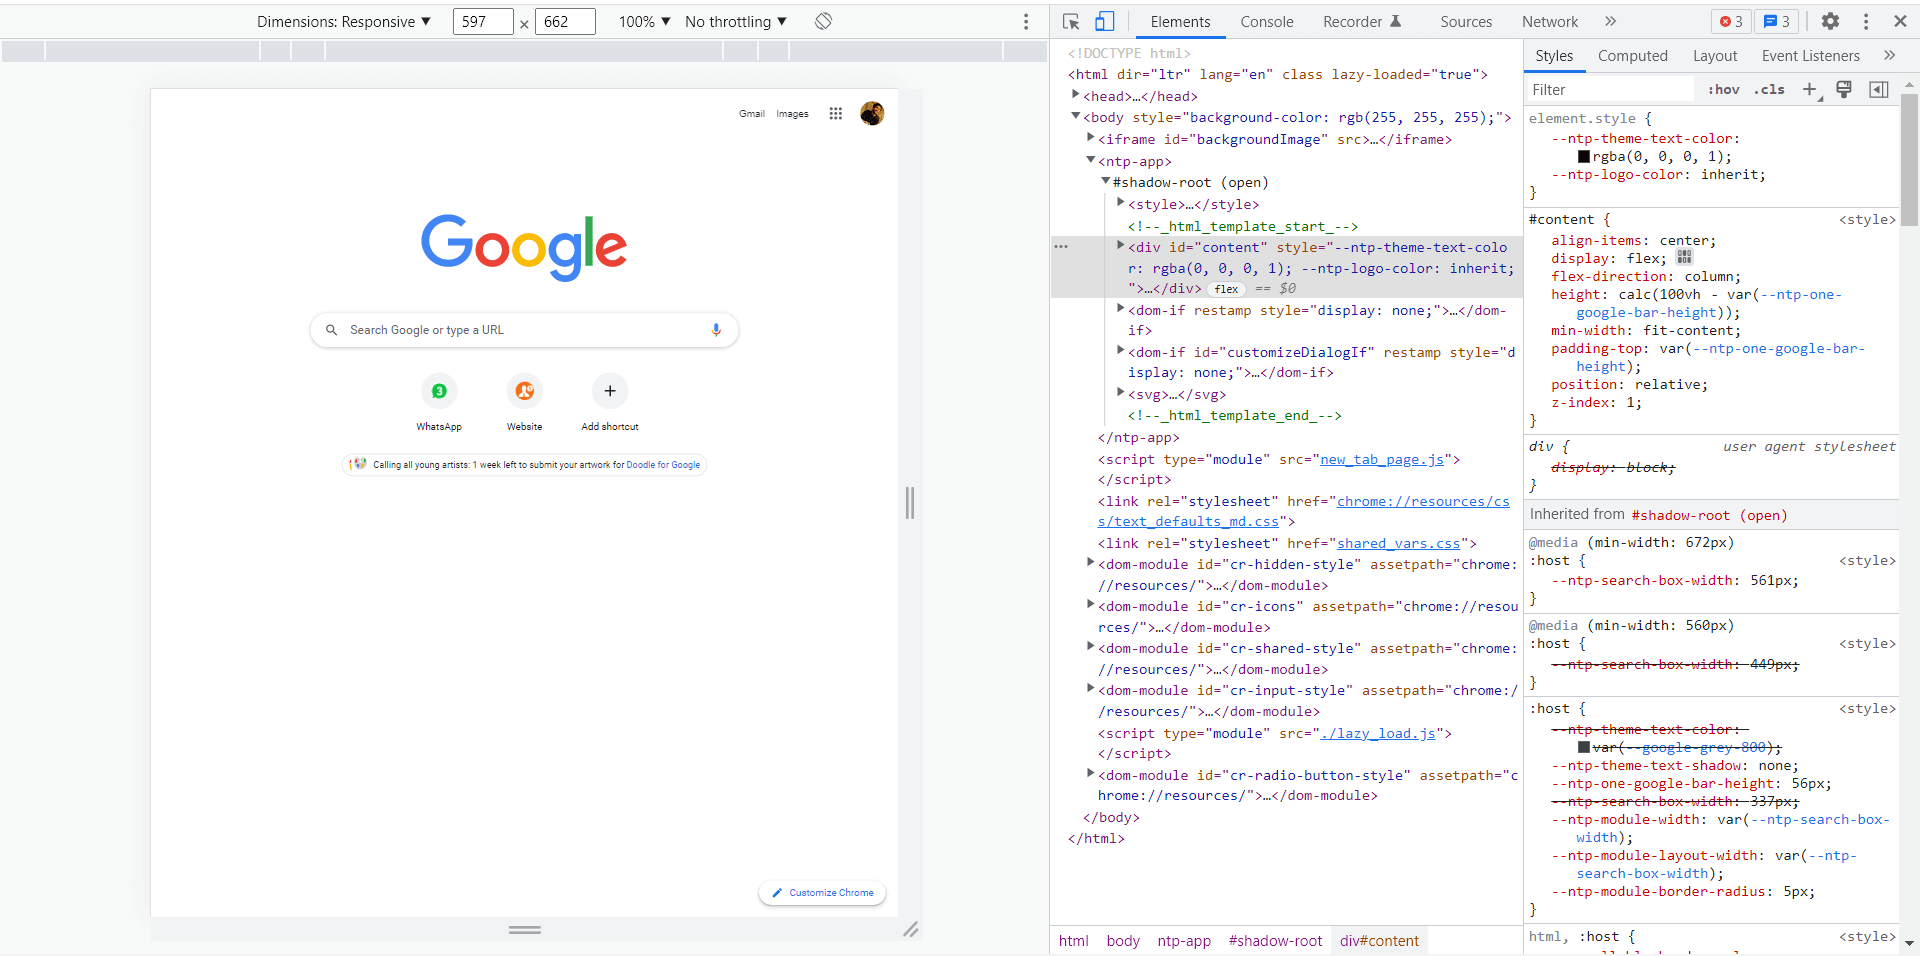 debug JavaScript for the Google landing page